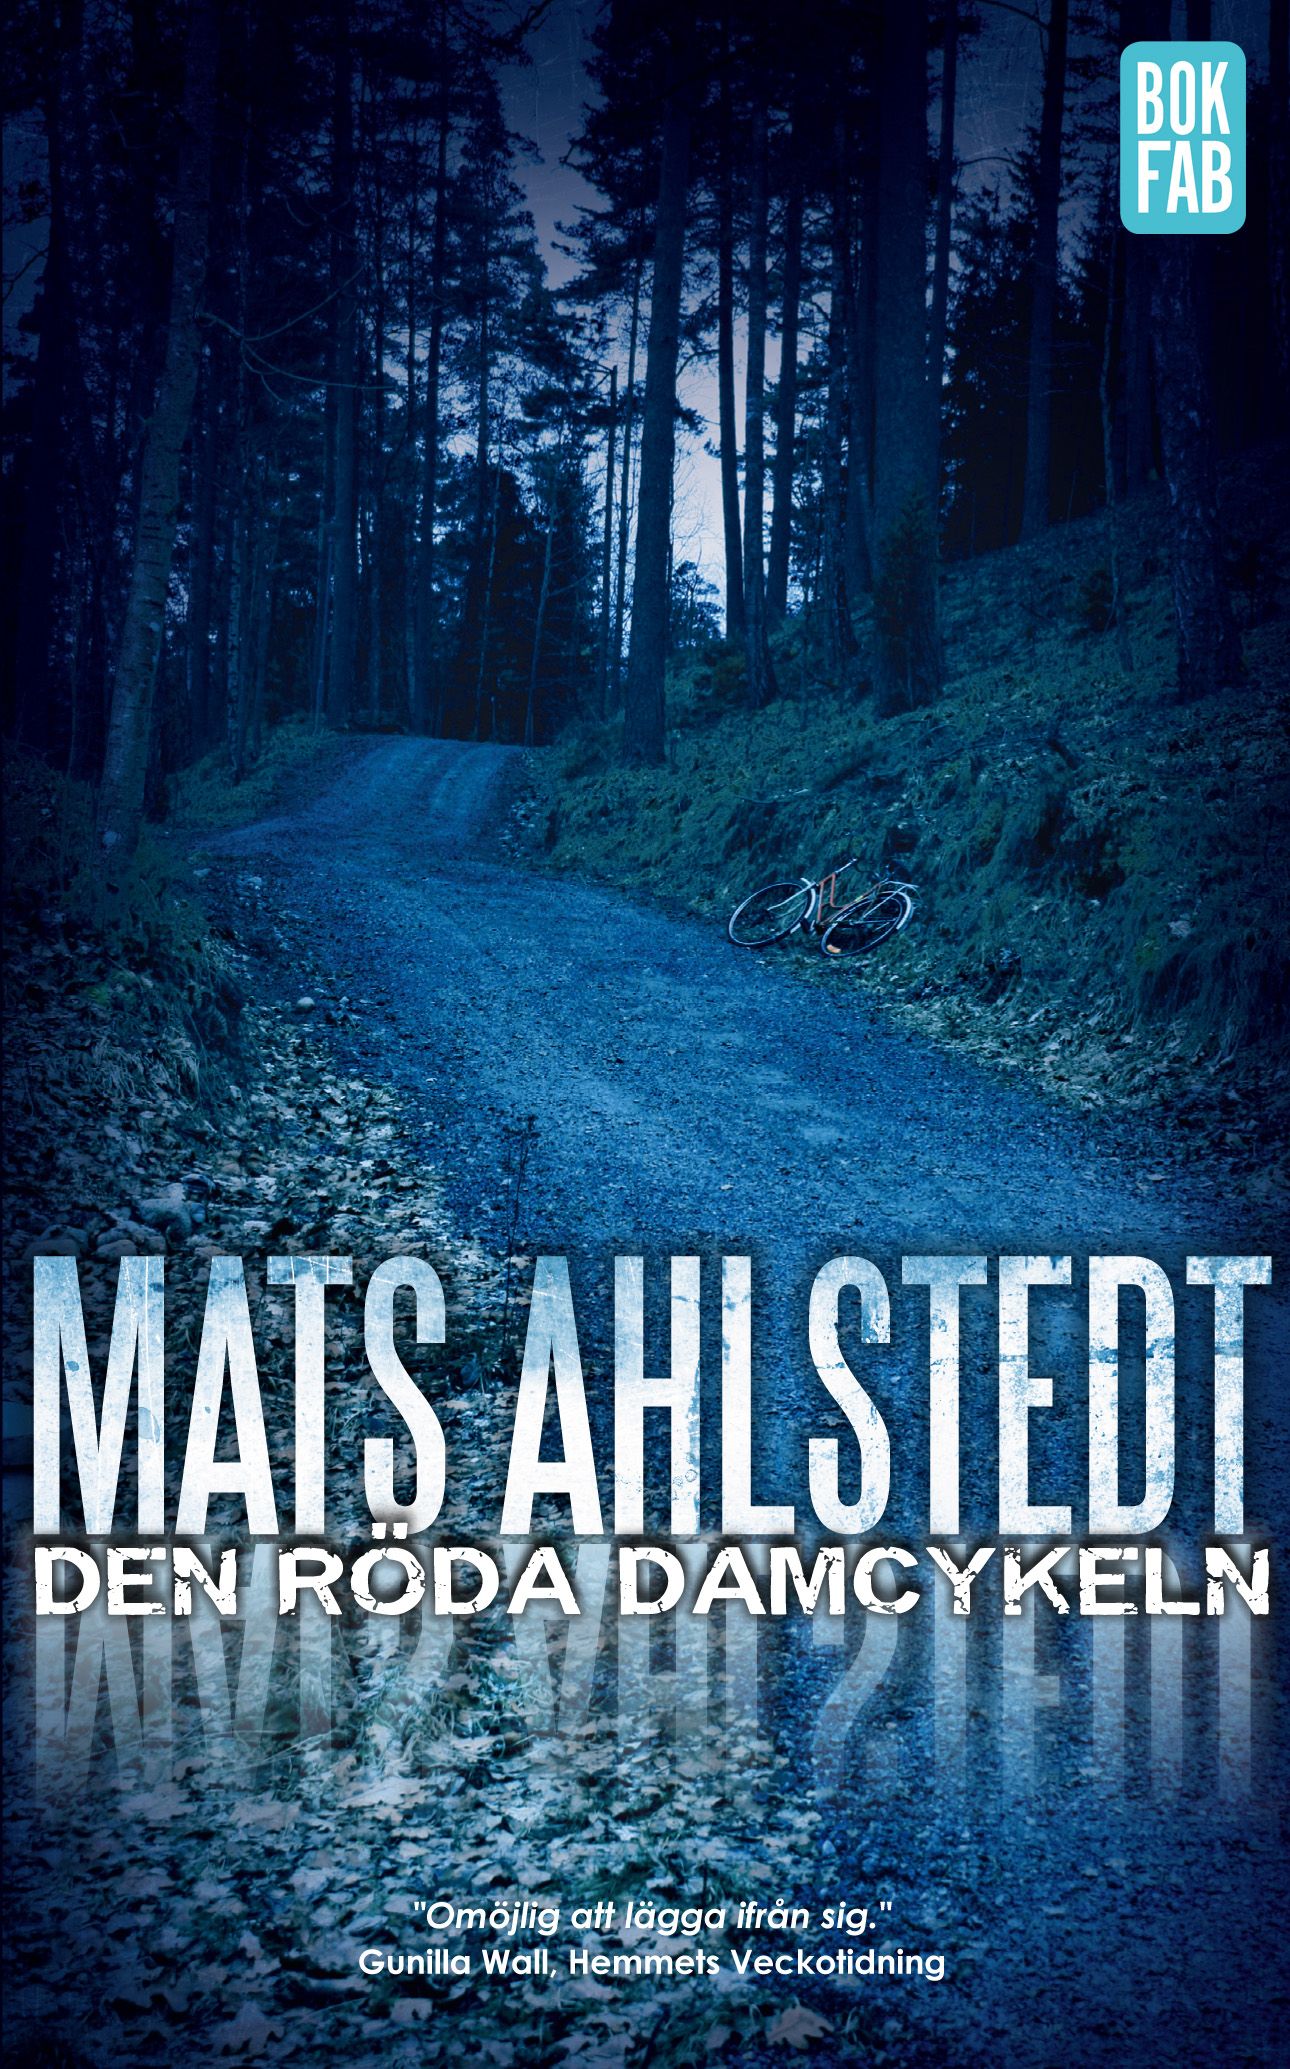 Den röda damcykeln, e-bog af Mats Ahlstedt